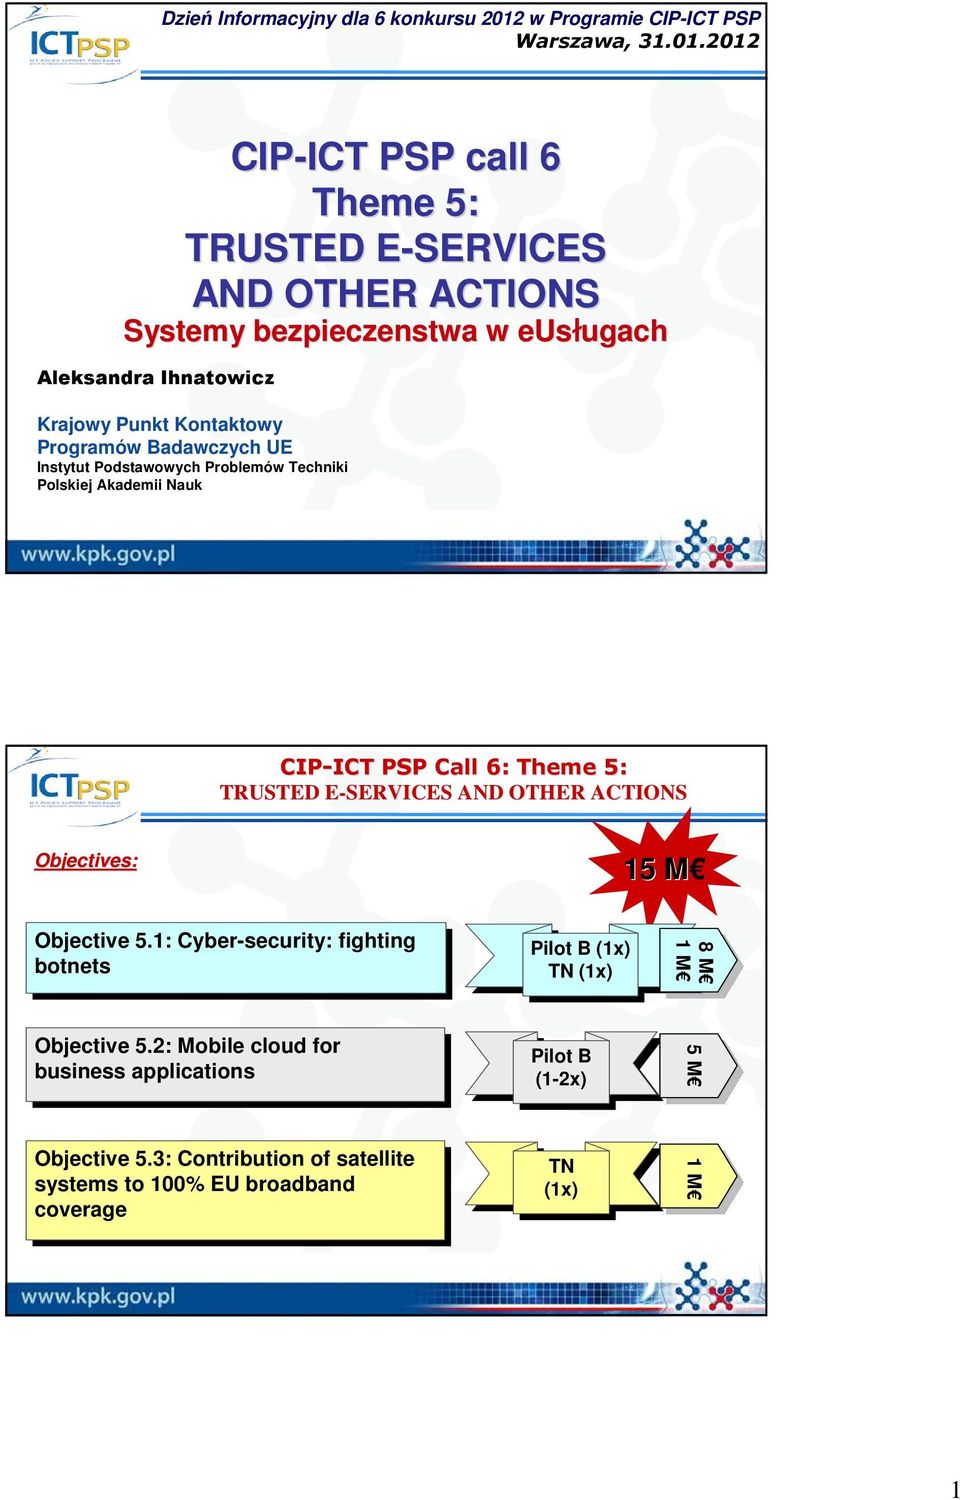 2012 CIP-ICT ICT PSP call 6 Theme 5: TRUSTED E-SERVICES E AND OTHER ACTIONS Systemy bezpieczenstwa w eusługach Aleksandra Ihnatowicz Krajowy Punkt Kontaktowy Programów Badawczych UE